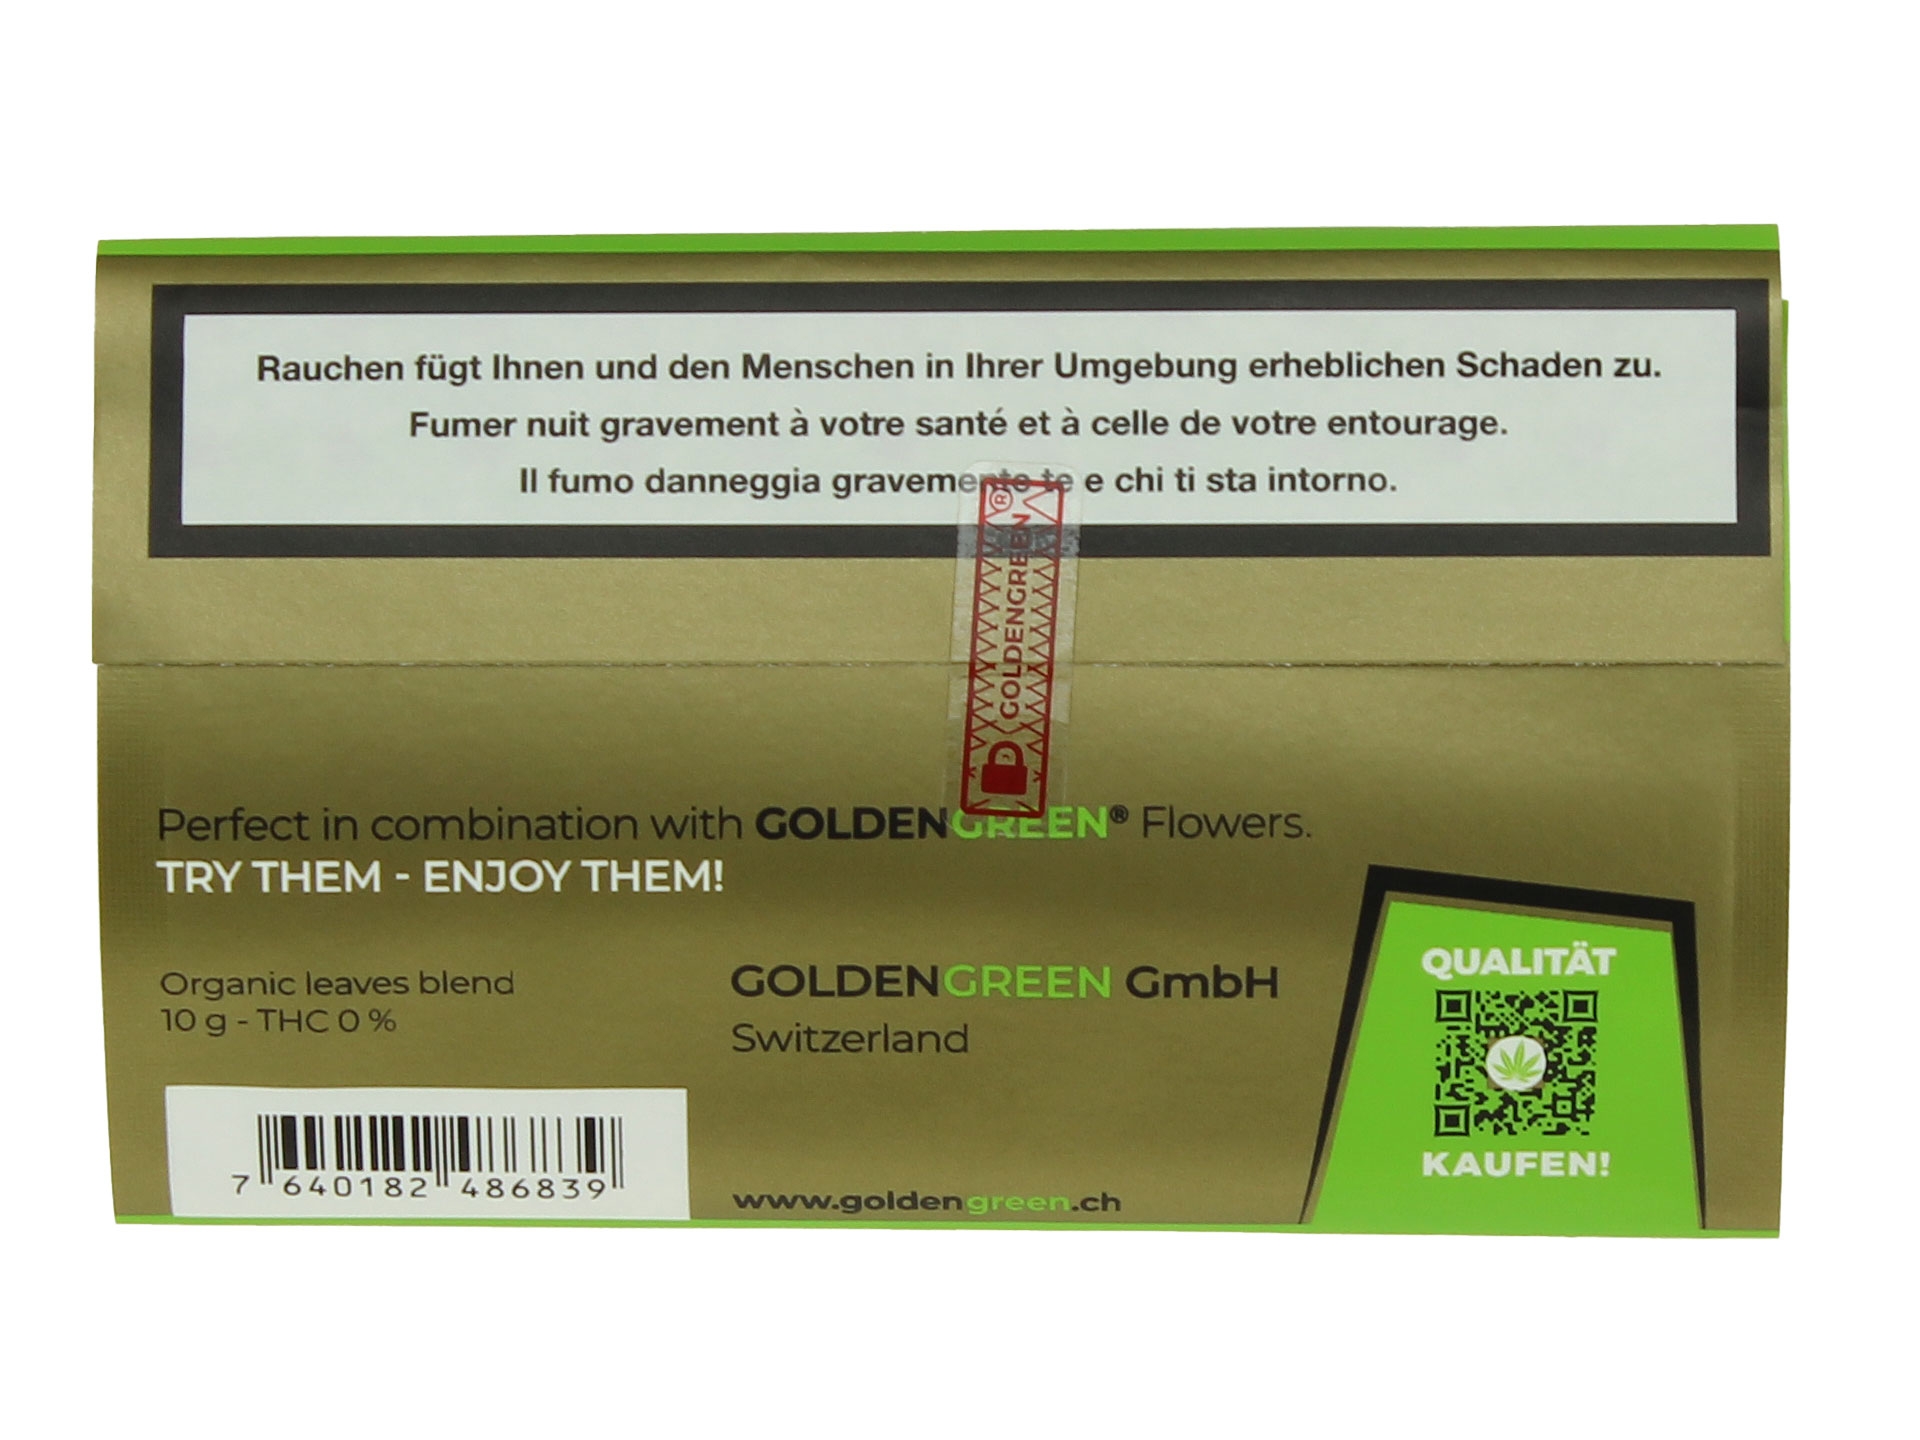 Green Mix - Substitut de Tabac BIO et Sans Nicotine